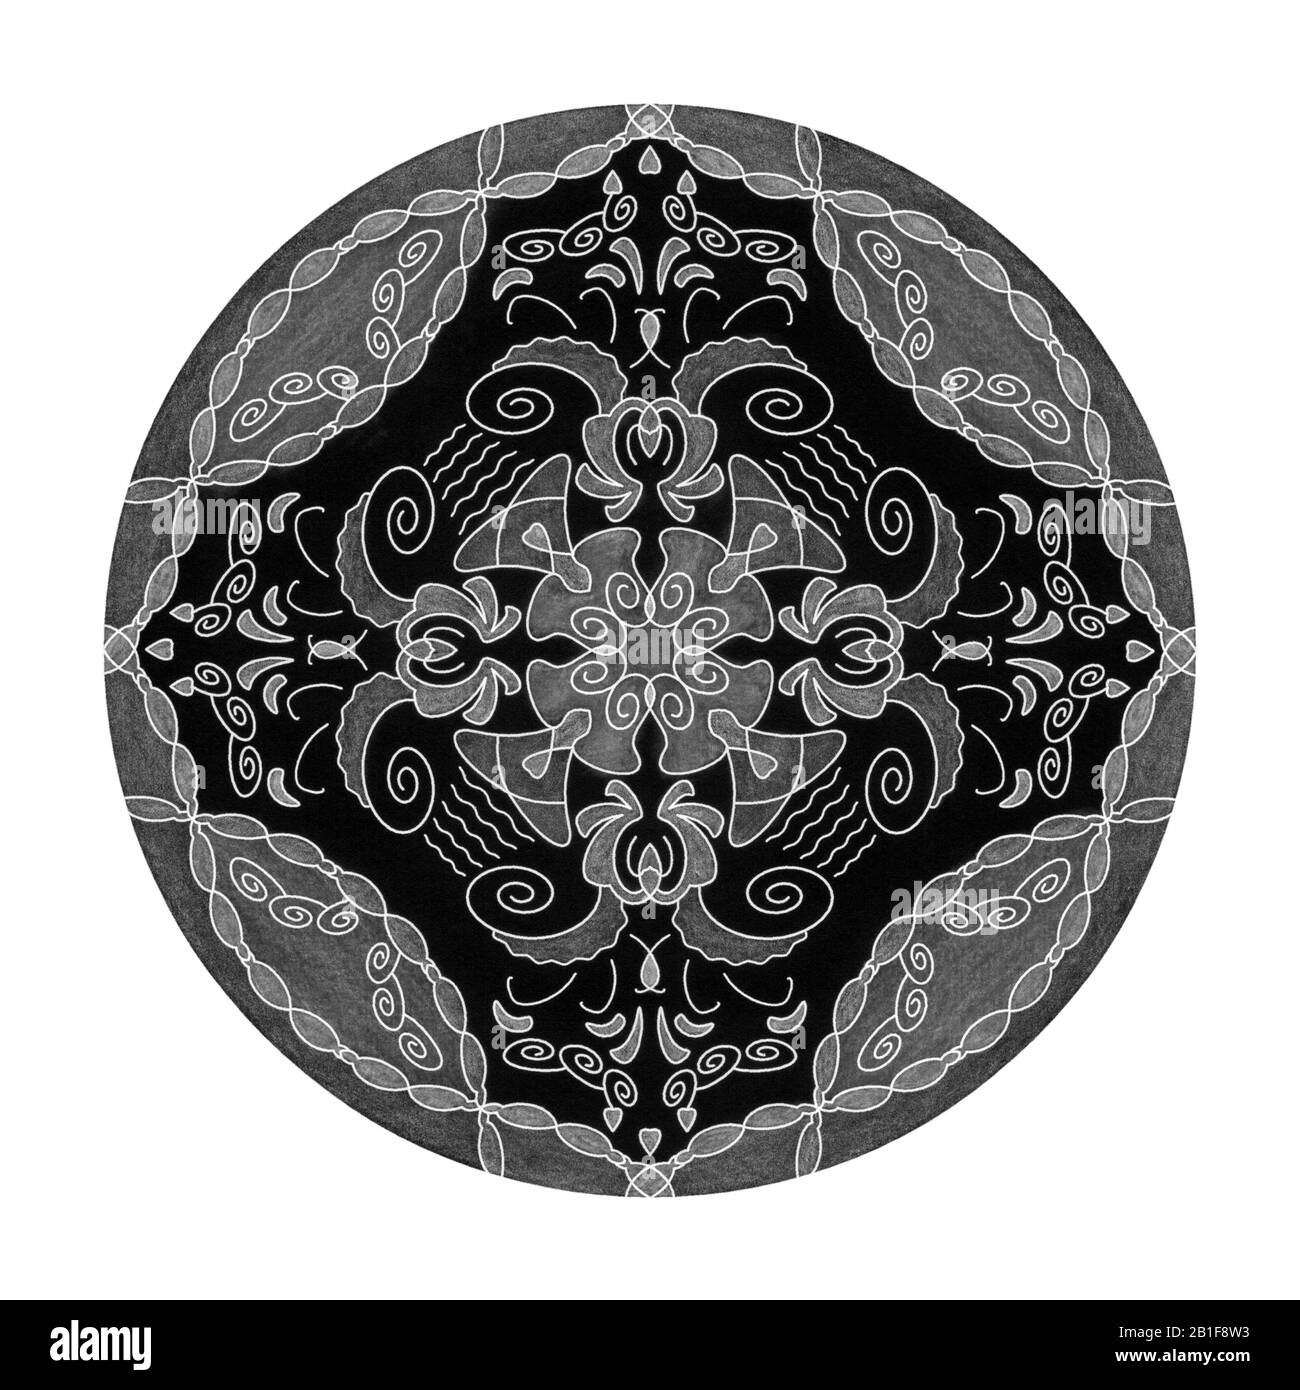 Effetti matita colorati. Illustrazione mandala nero, bianco e grigio. Cuore, spirale, uccello e flower.Abstract. Elemento decorativo. Foto Stock